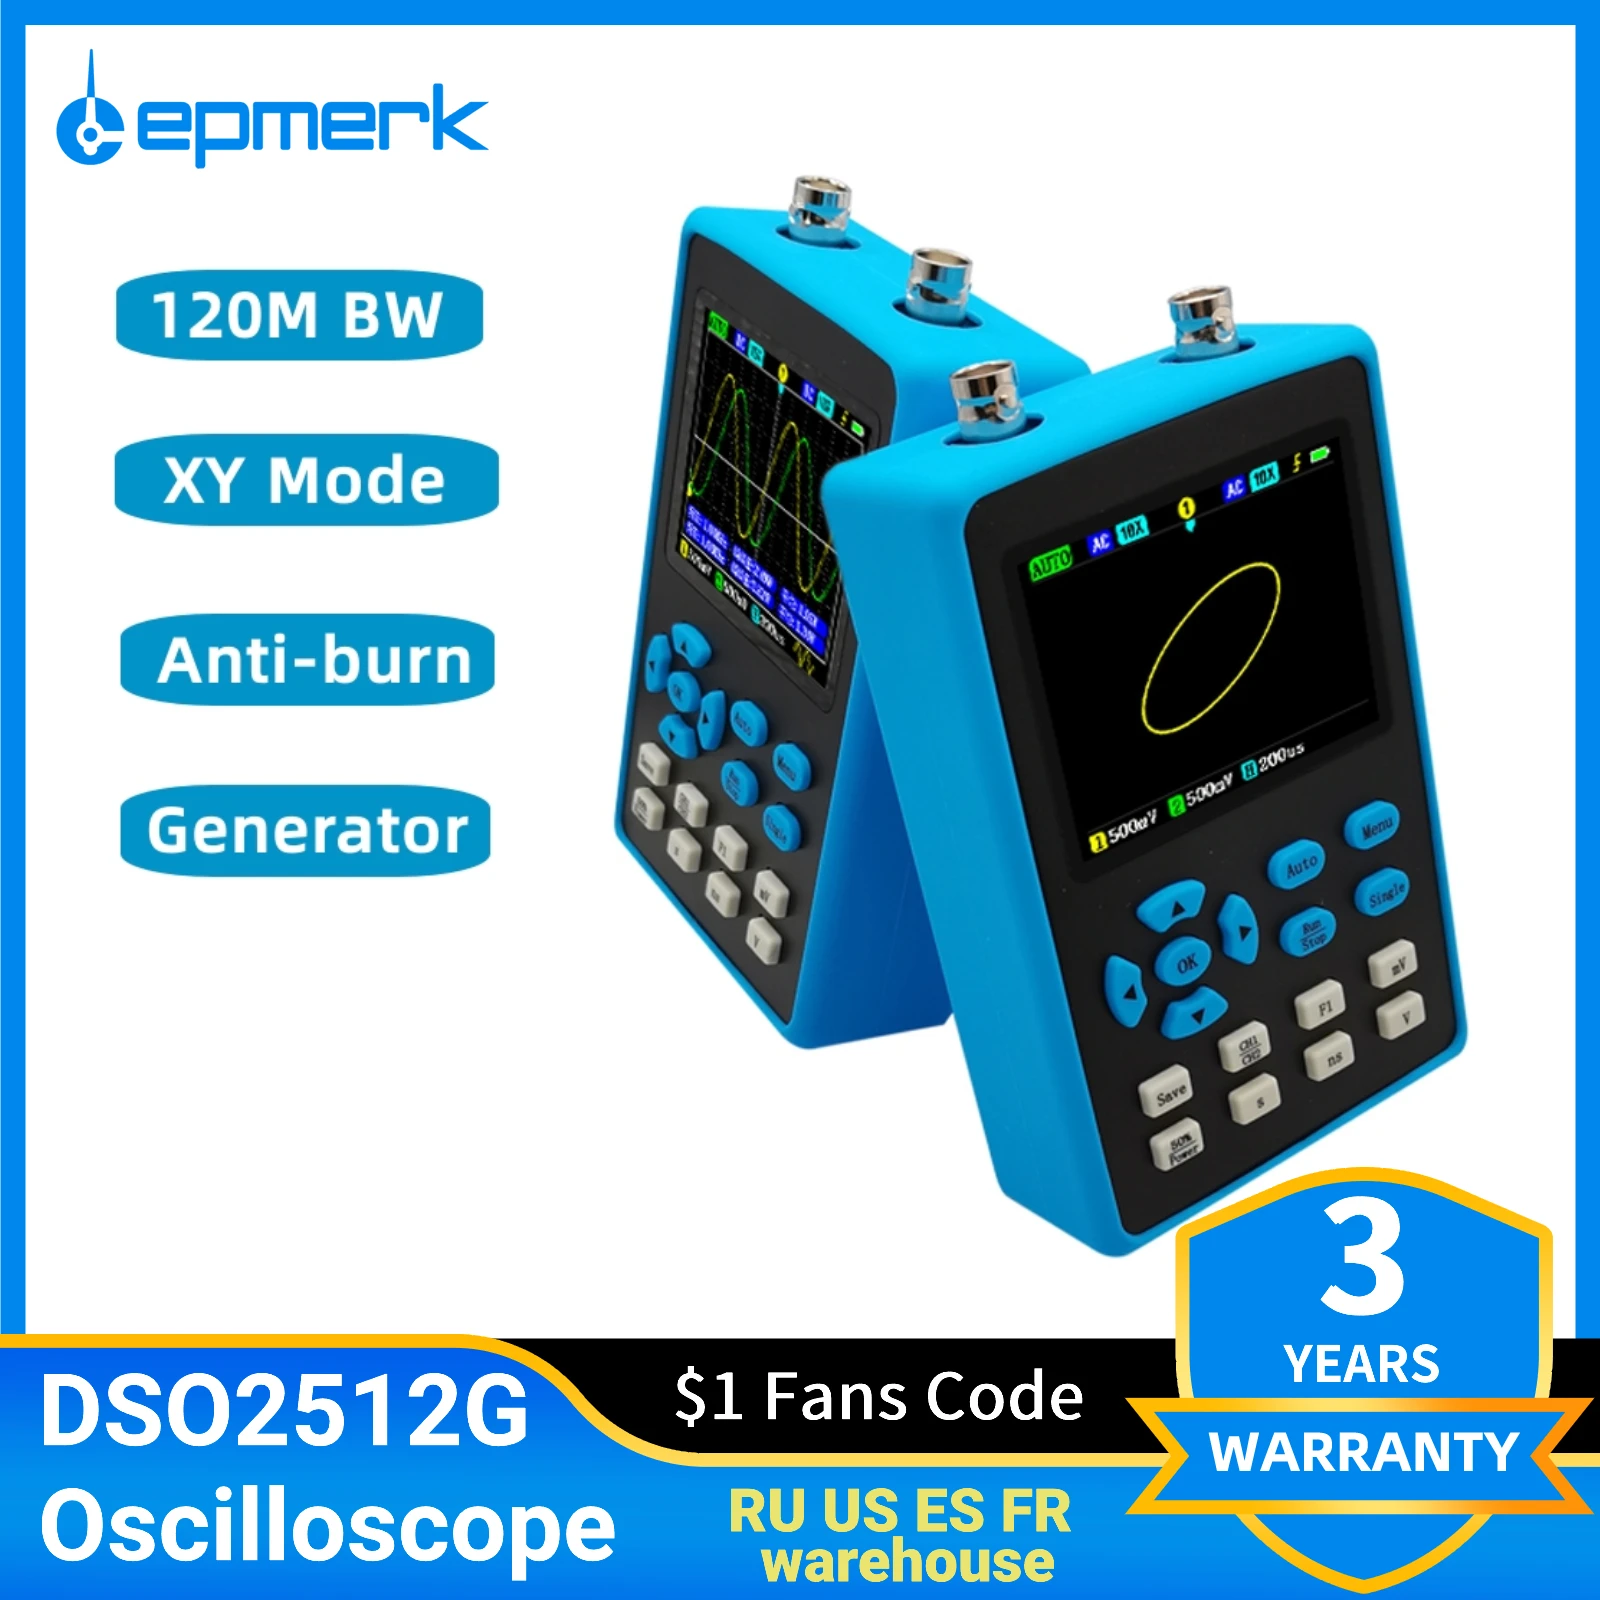 

Цифровой осциллограф Lemperk DSO2512G, полоса пропускания 120 м, двухканальный/одноканальный осциллограф с функцией измерения зеркального спектра